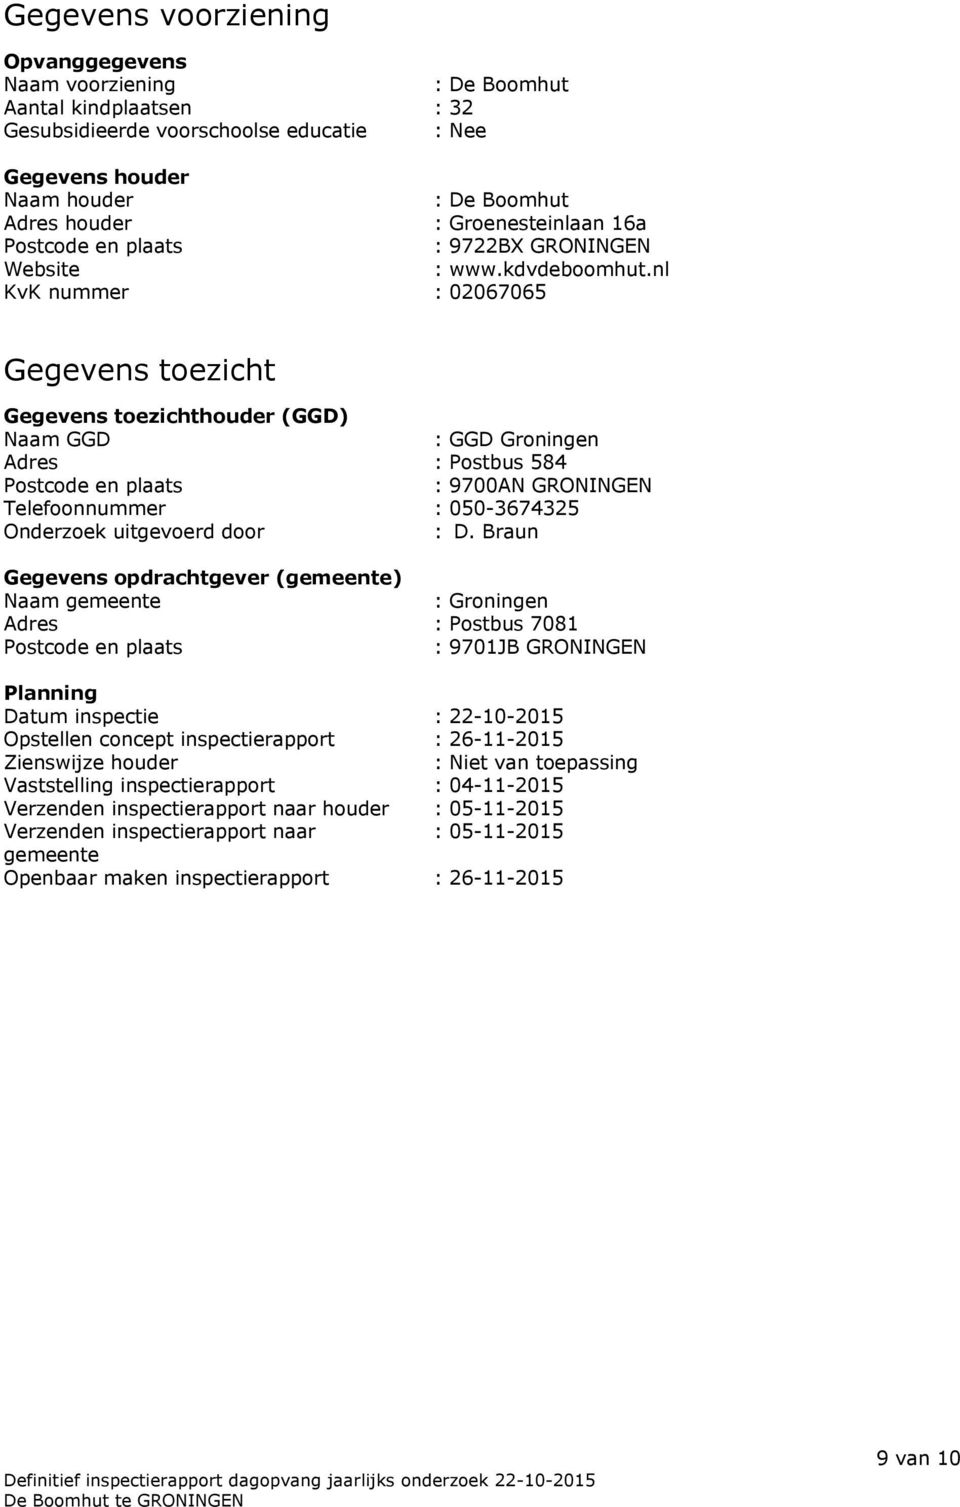 nl KvK nummer : 02067065 Gegevens toezicht Gegevens toezichthouder (GGD) Naam GGD : GGD Groningen Adres : Postbus 584 Postcode en plaats : 9700AN GRONINGEN Telefoonnummer : 050-3674325 Onderzoek